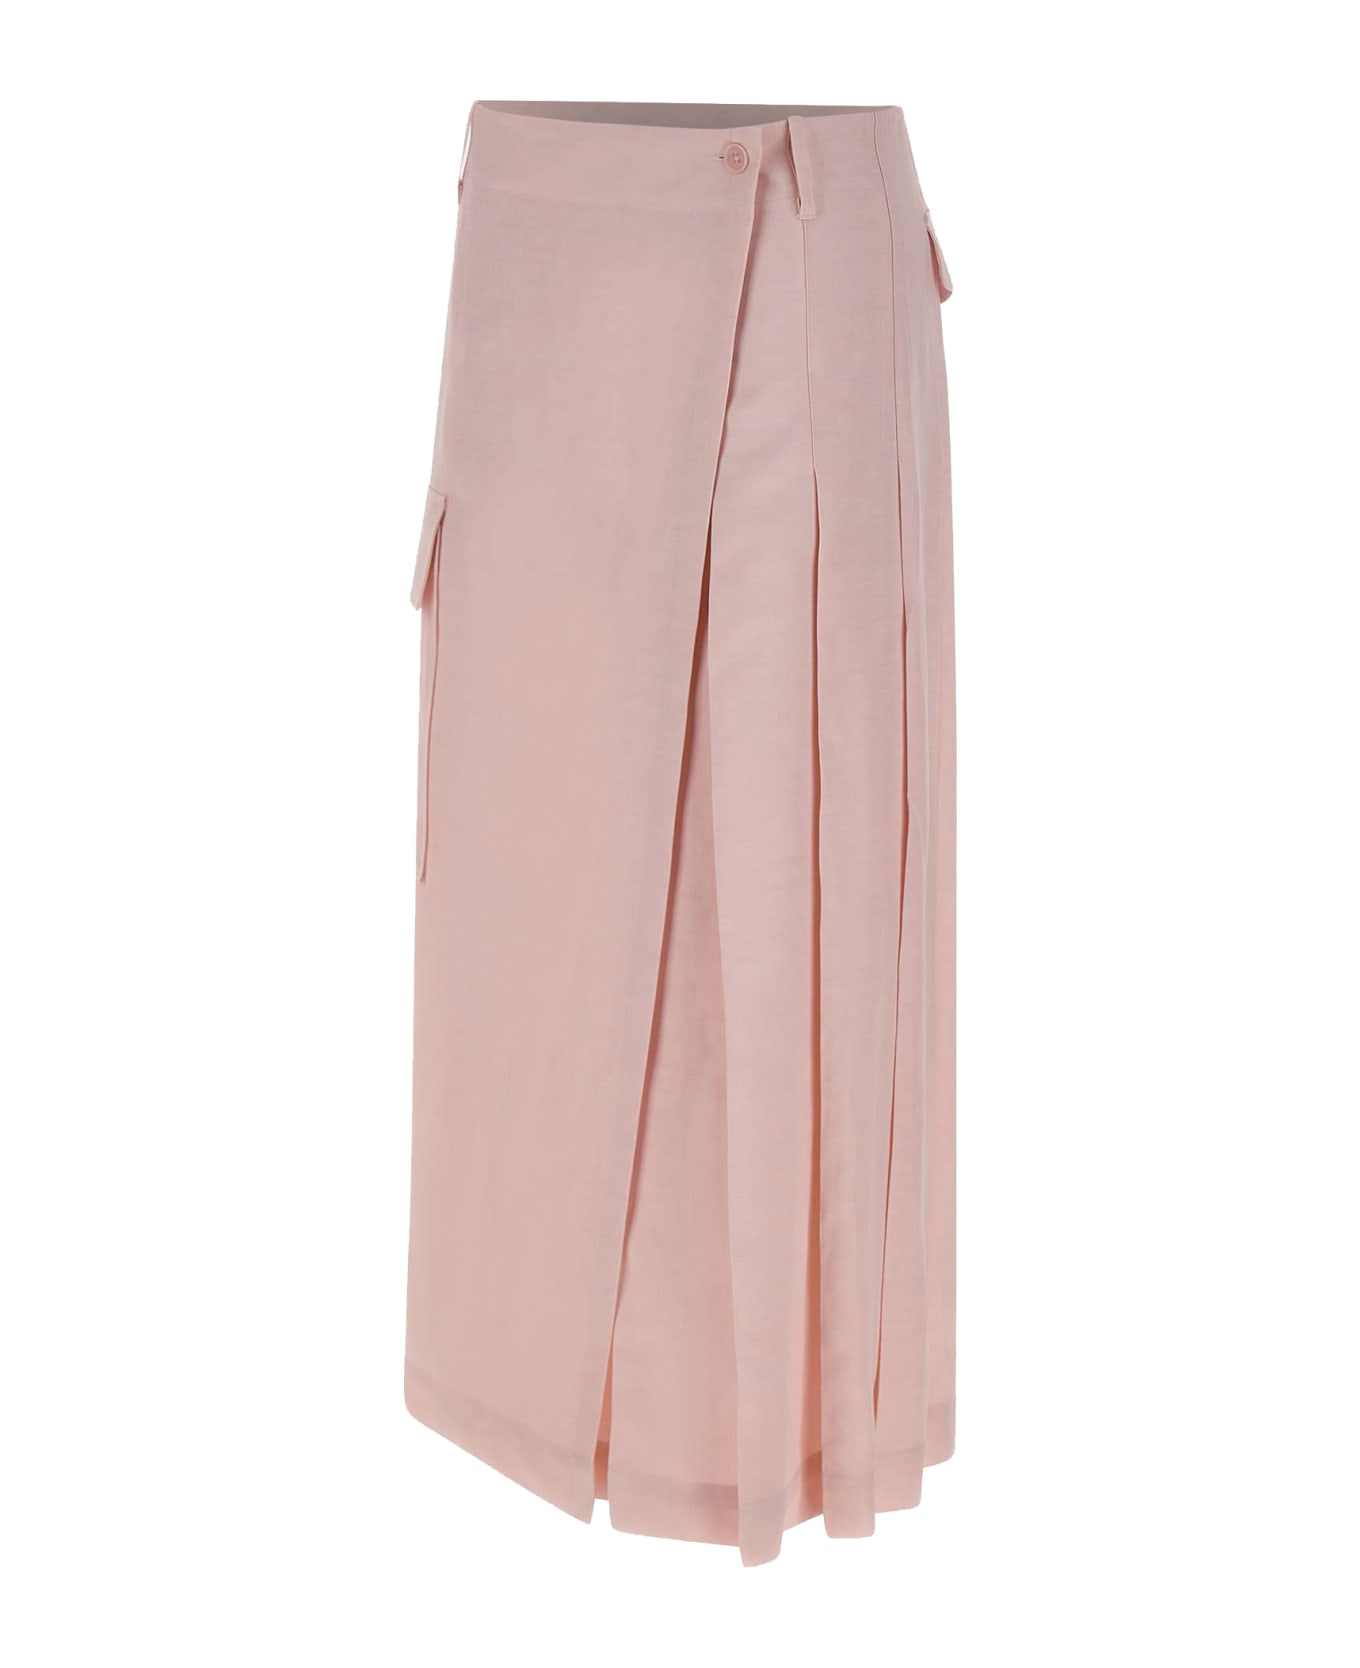 Parosh "raisa24" Linen And Viscose Skirt - PINK